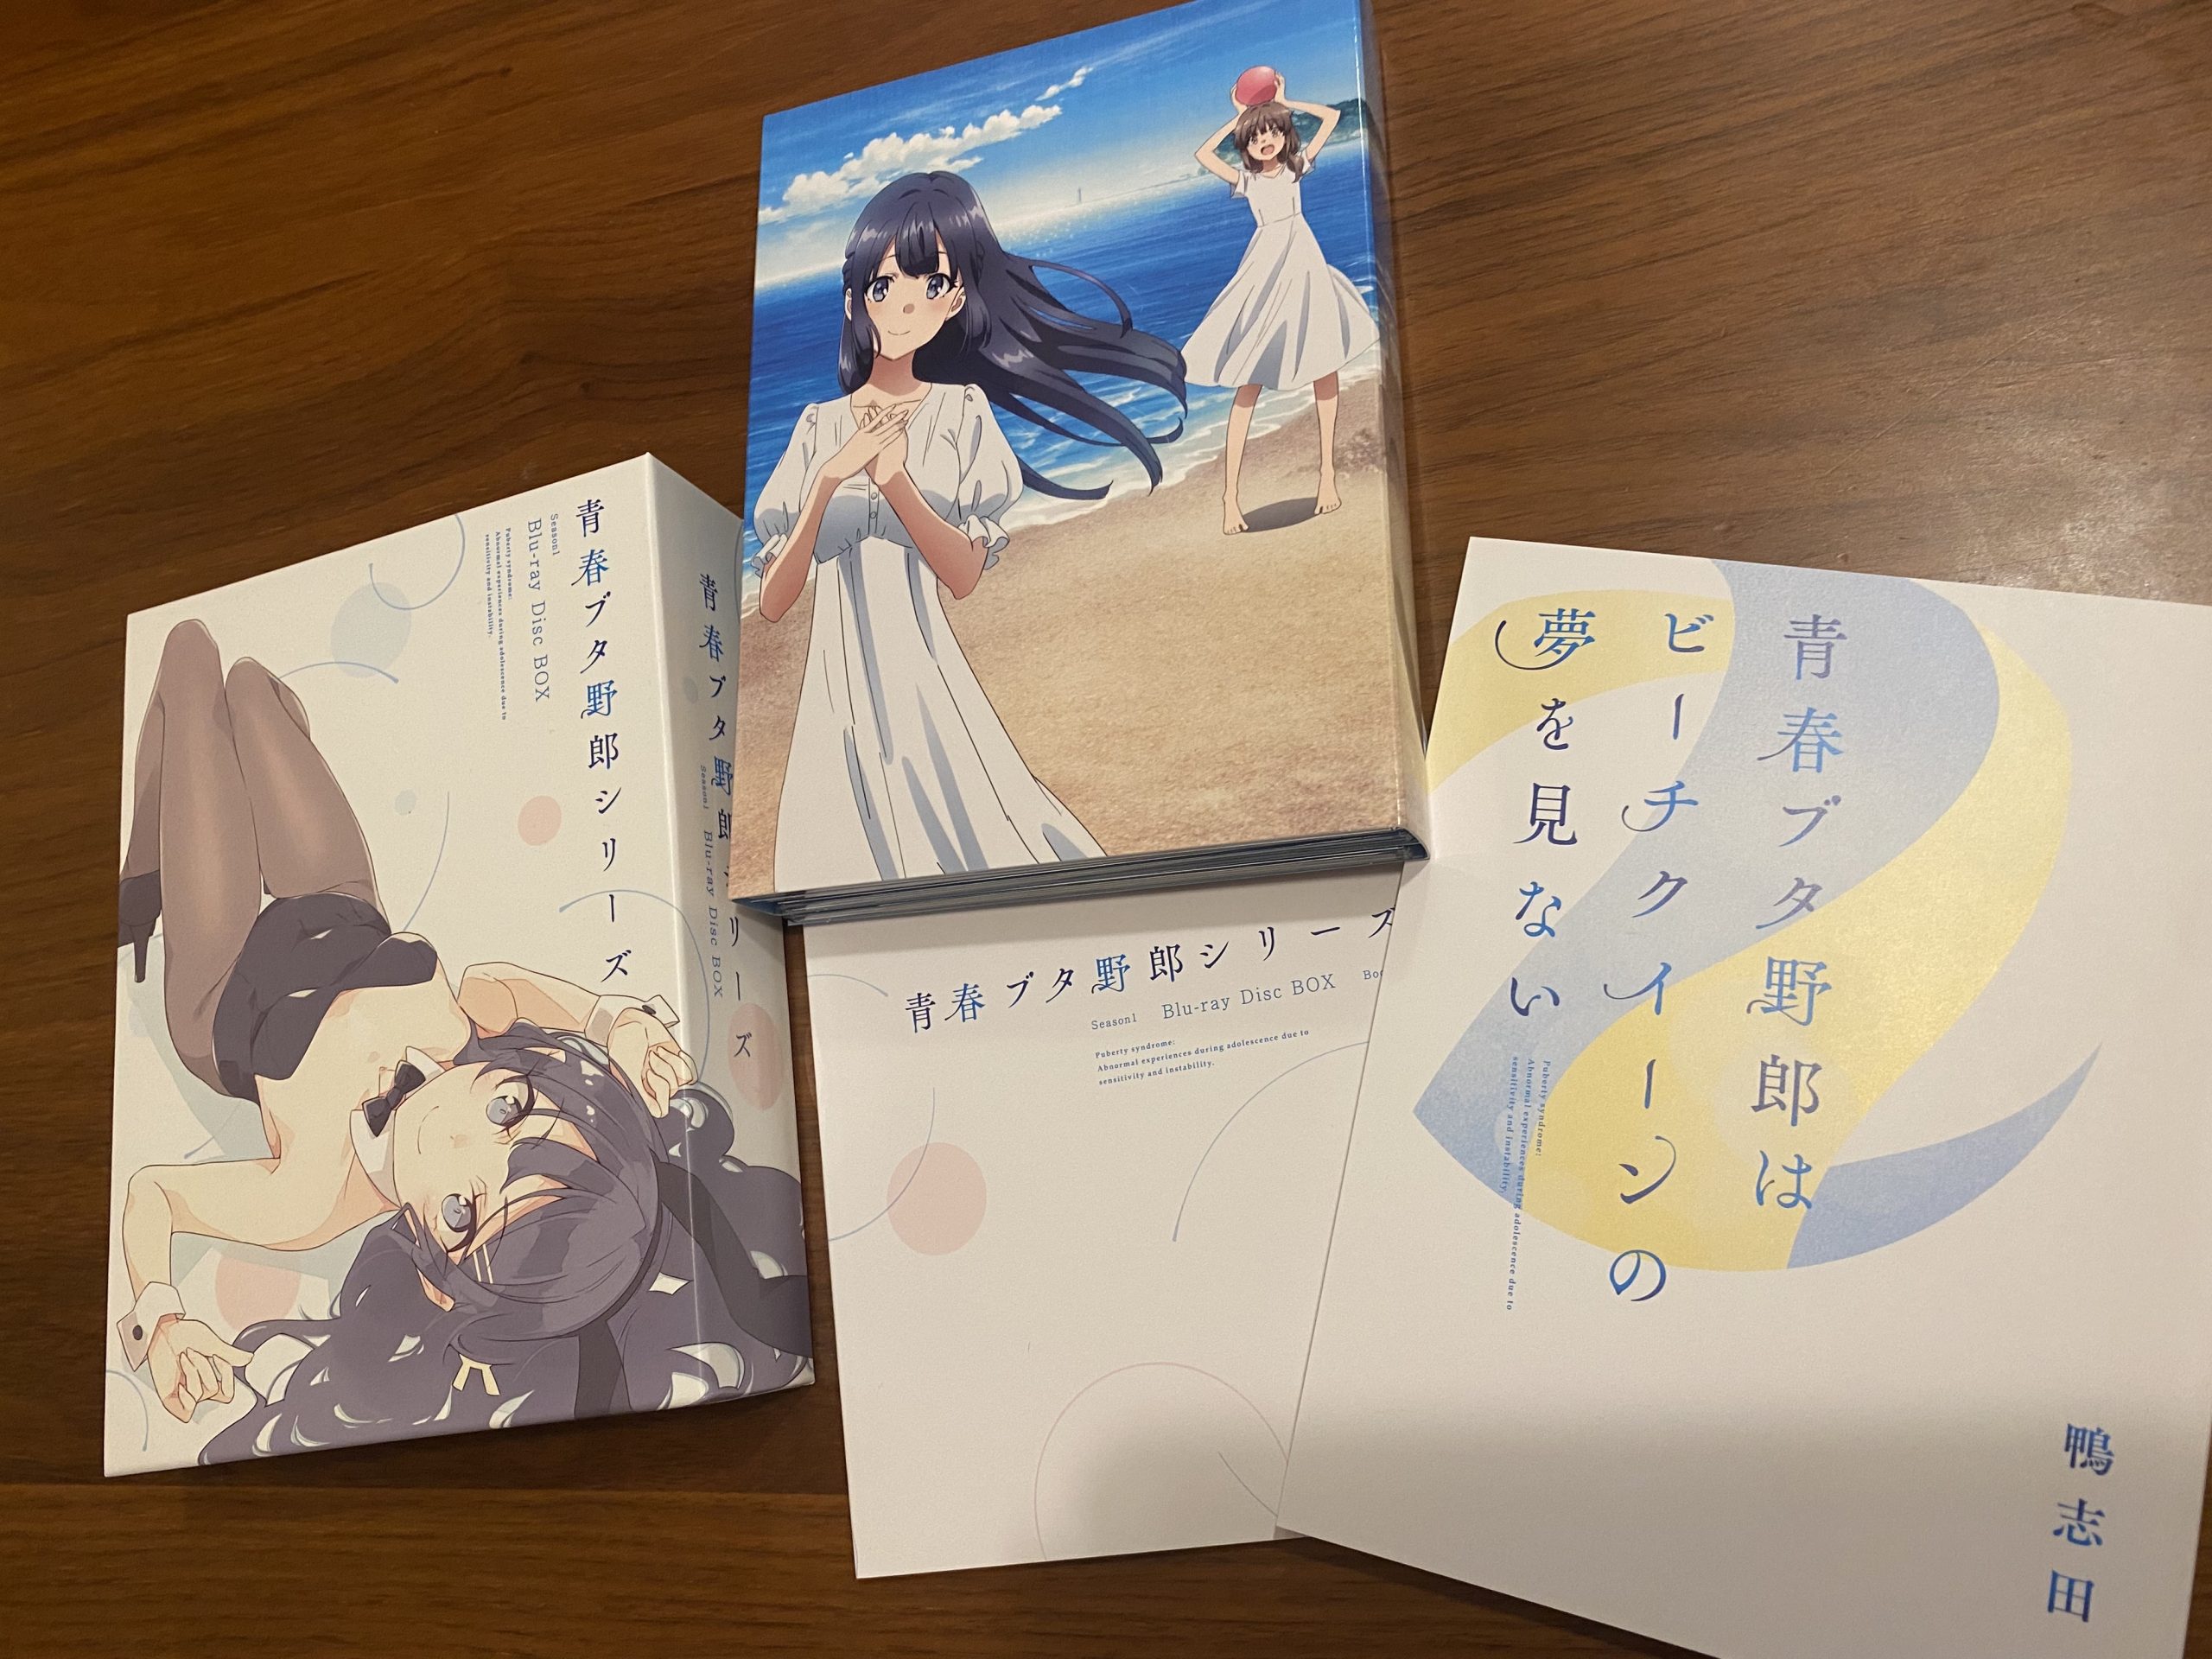 ナチュラ 青春ブタ野郎シリーズ Season1 Blu-ray Disc BOX - 通販